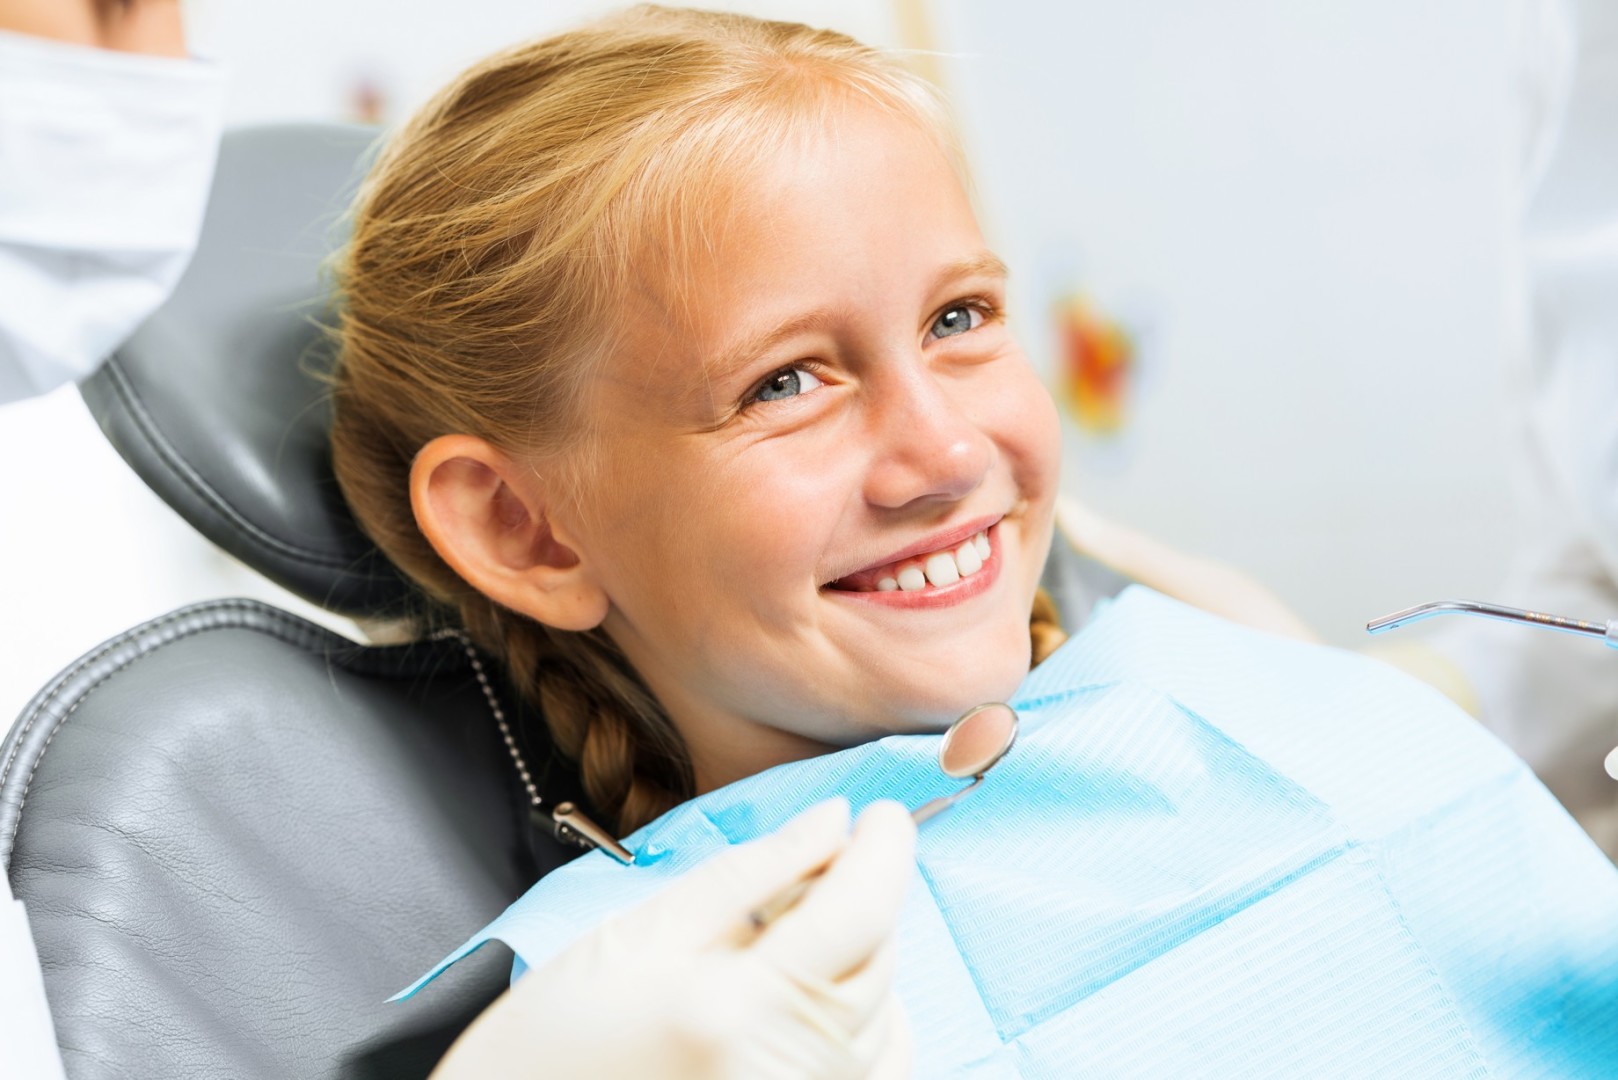 Le traitement orthodontique chez l'adulte : différents appareillages  proposés au cabinet d'orthodontie